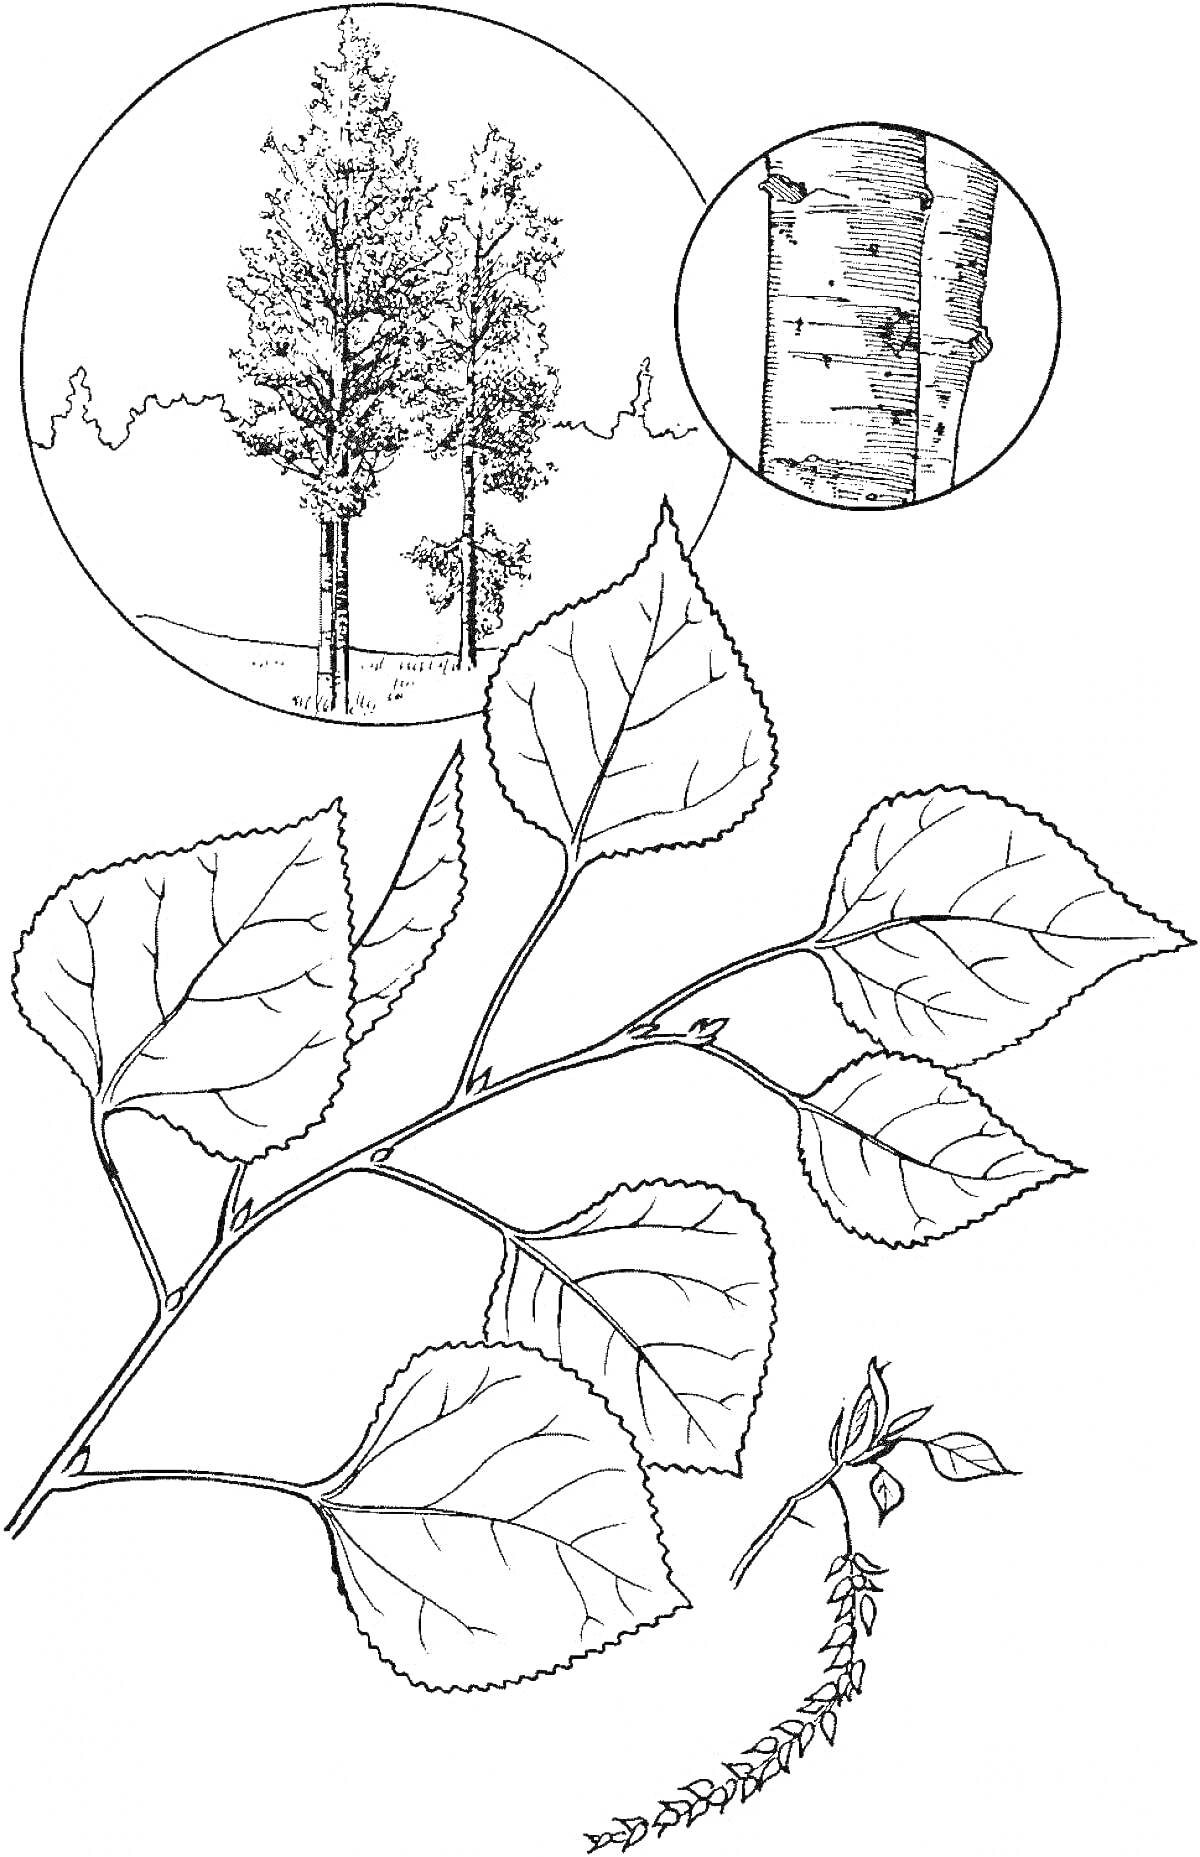 Тополь с веткой, листьями, почками и сережками, а также со стволом и видом деревьев на заднем плане